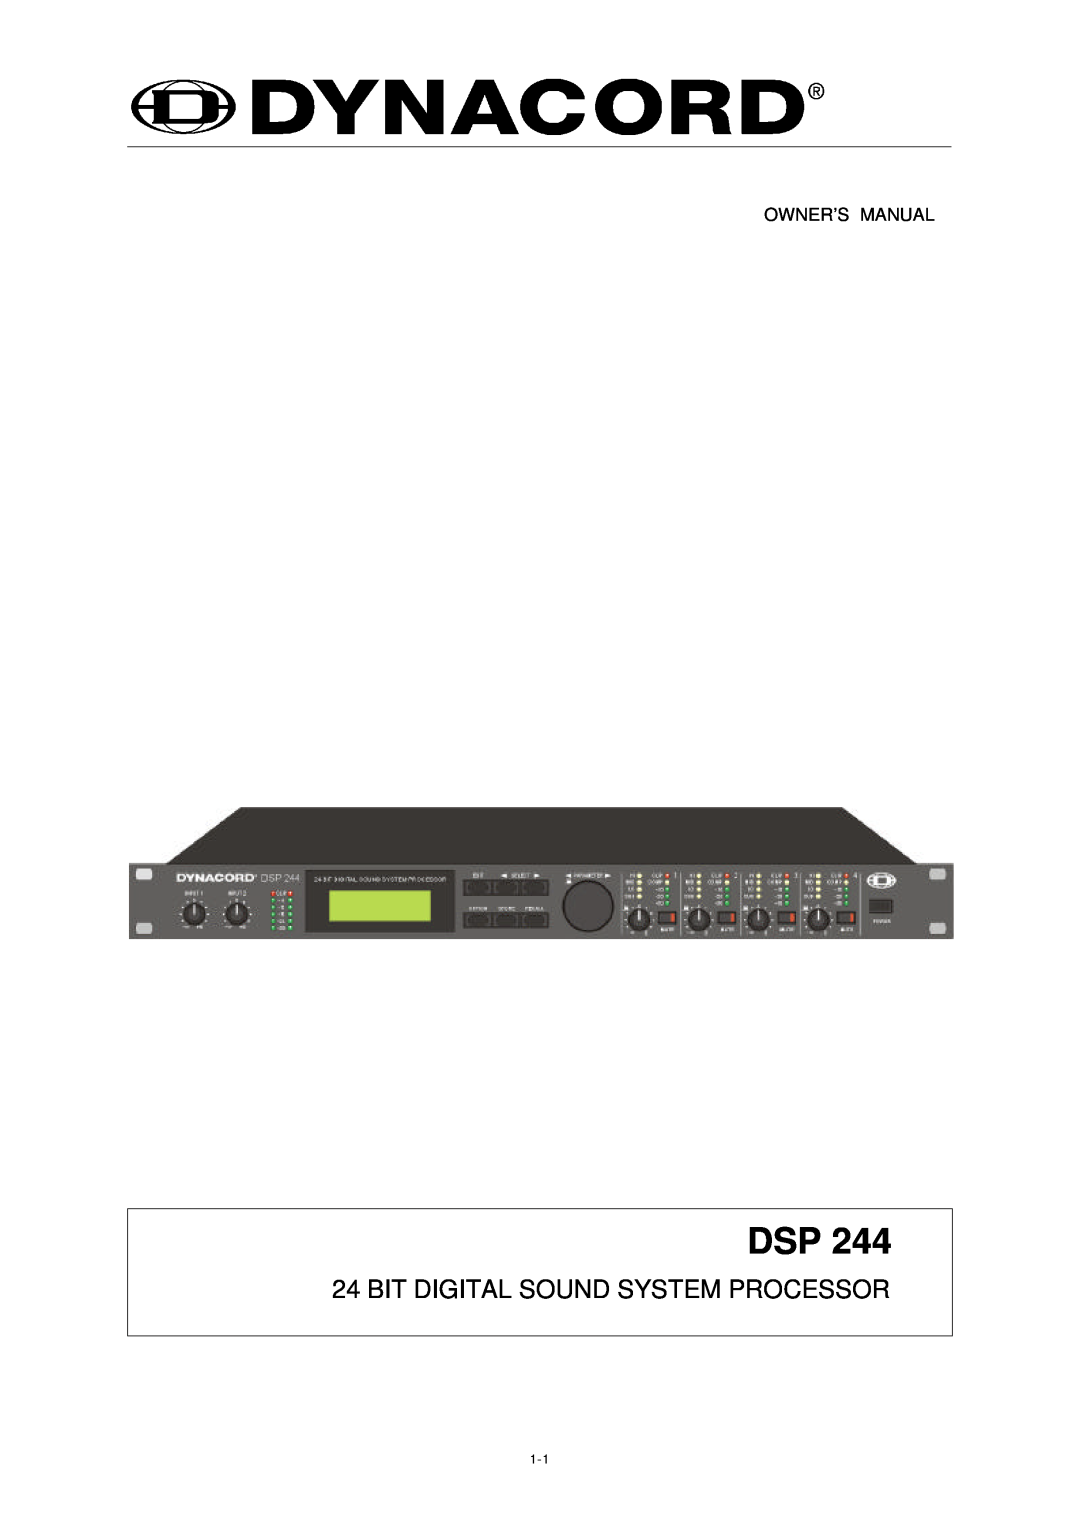 Dynacord DSP 244 owner manual Bit Digital Sound System Processor 